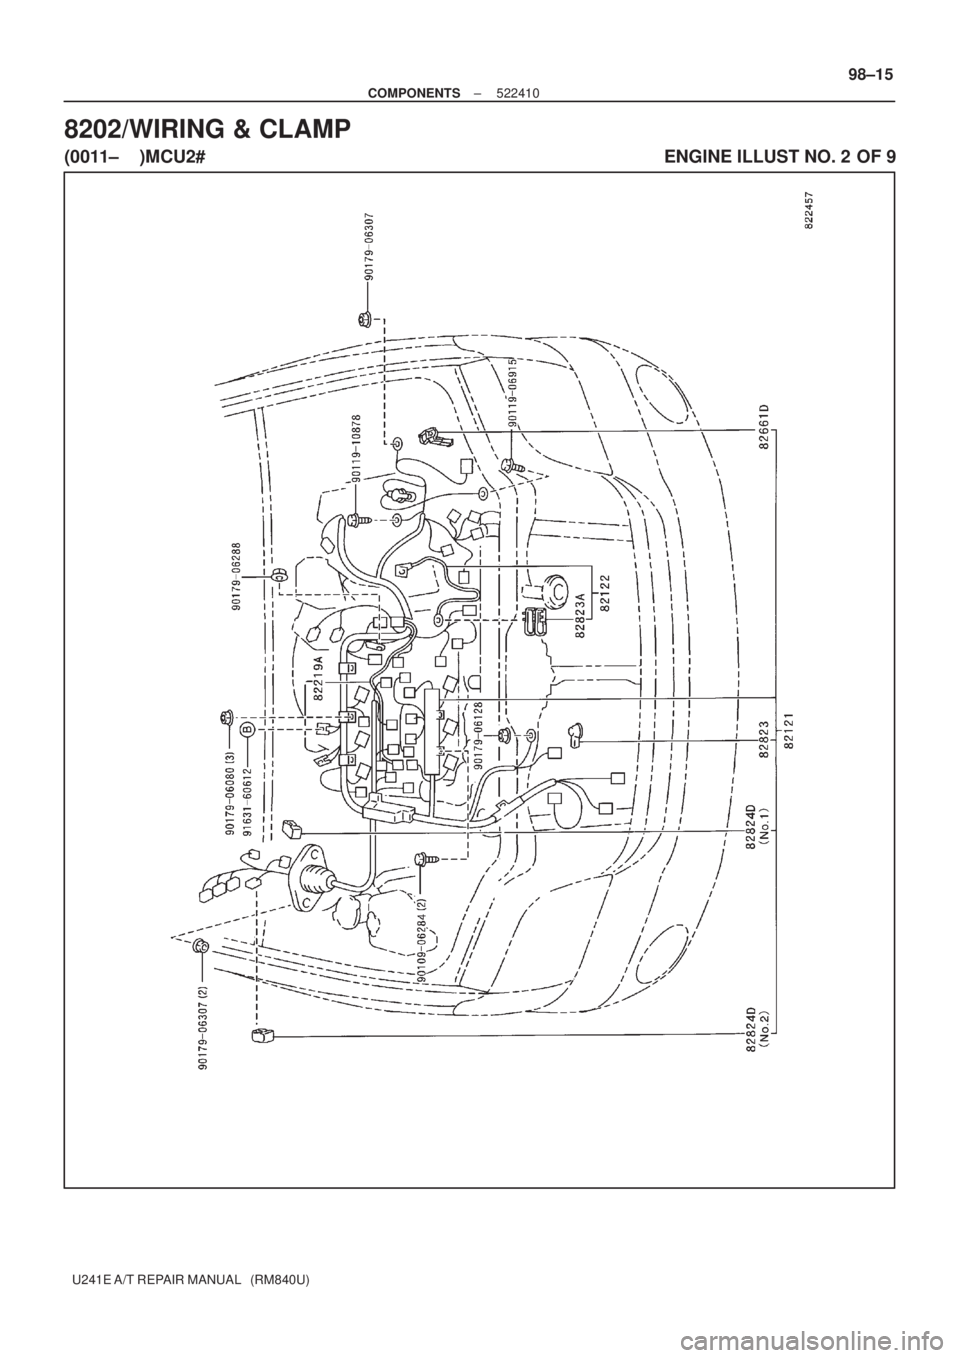 TOYOTA AVENSIS 2005  Service Repair Manual ± COMPONENTS522410
98±15
U241E A/T REPAIR MANUAL   (RM840U)
8202/WIRING & CLAMP
(0011±    )MCU2#                                                                                           ENGINE ILL